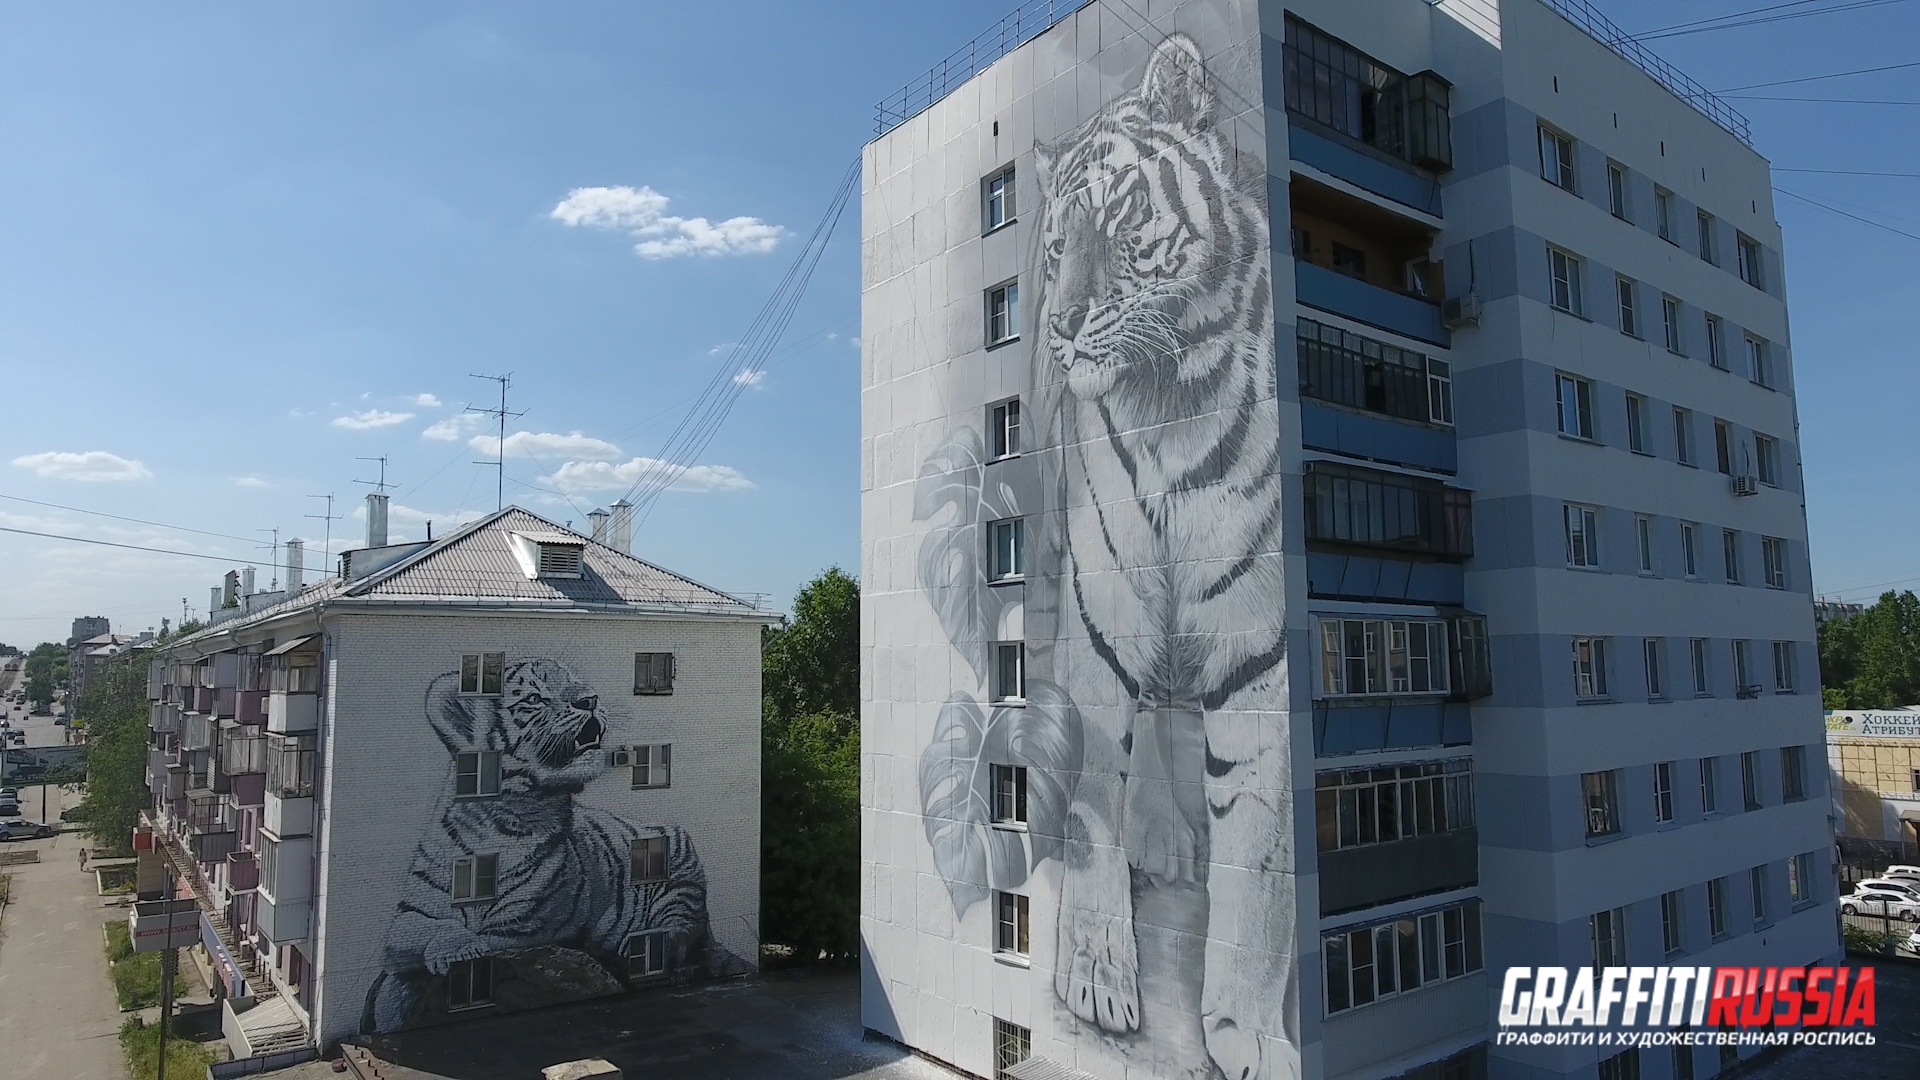 тигренок и тигрица, расписанные стены жилого дома